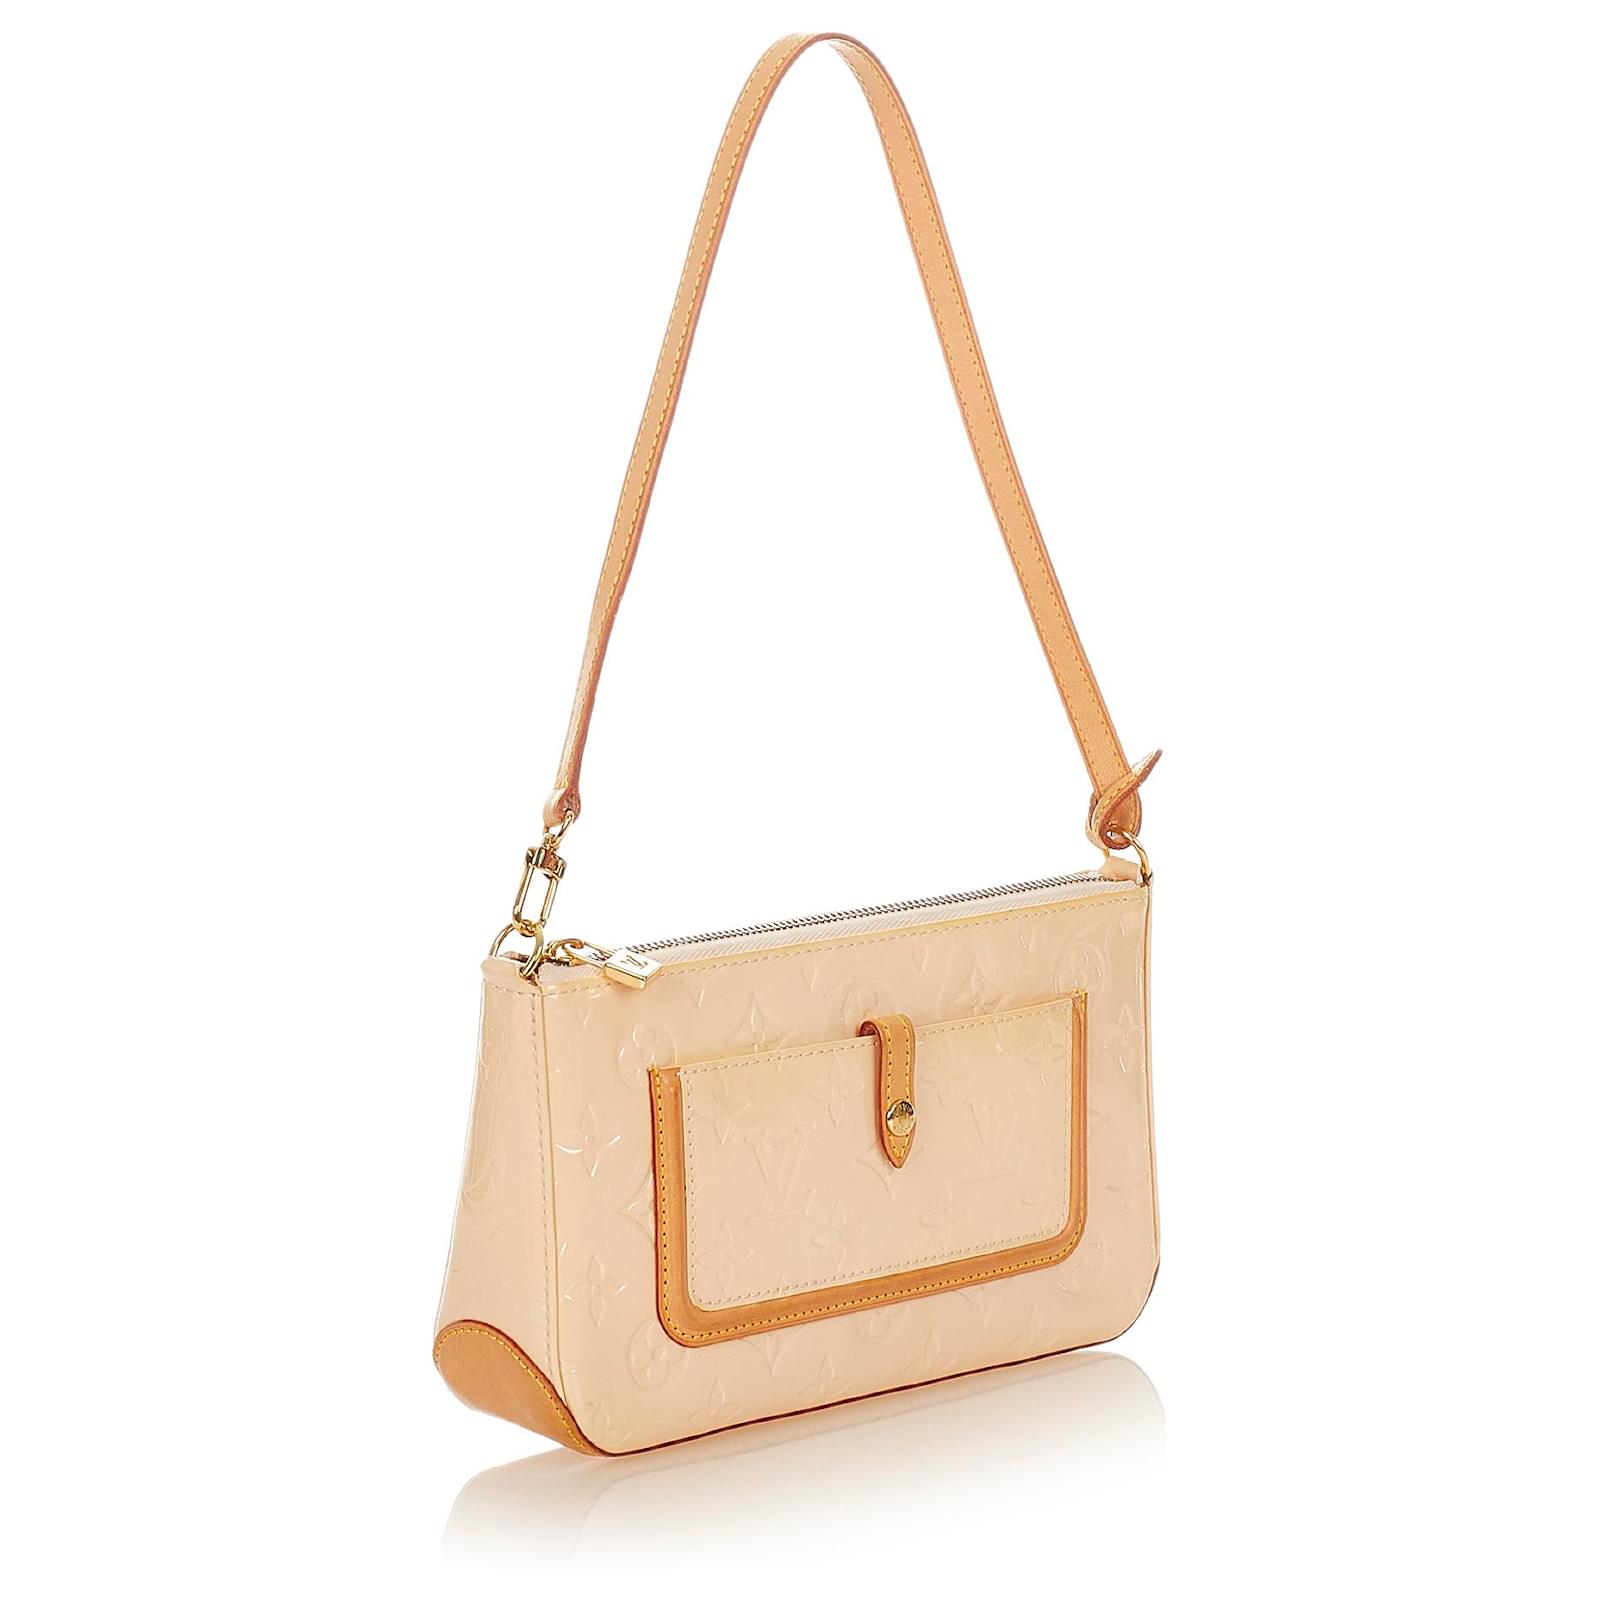 Louis Vuitton Monogram Vernis Mallory Square Shoulder Bag